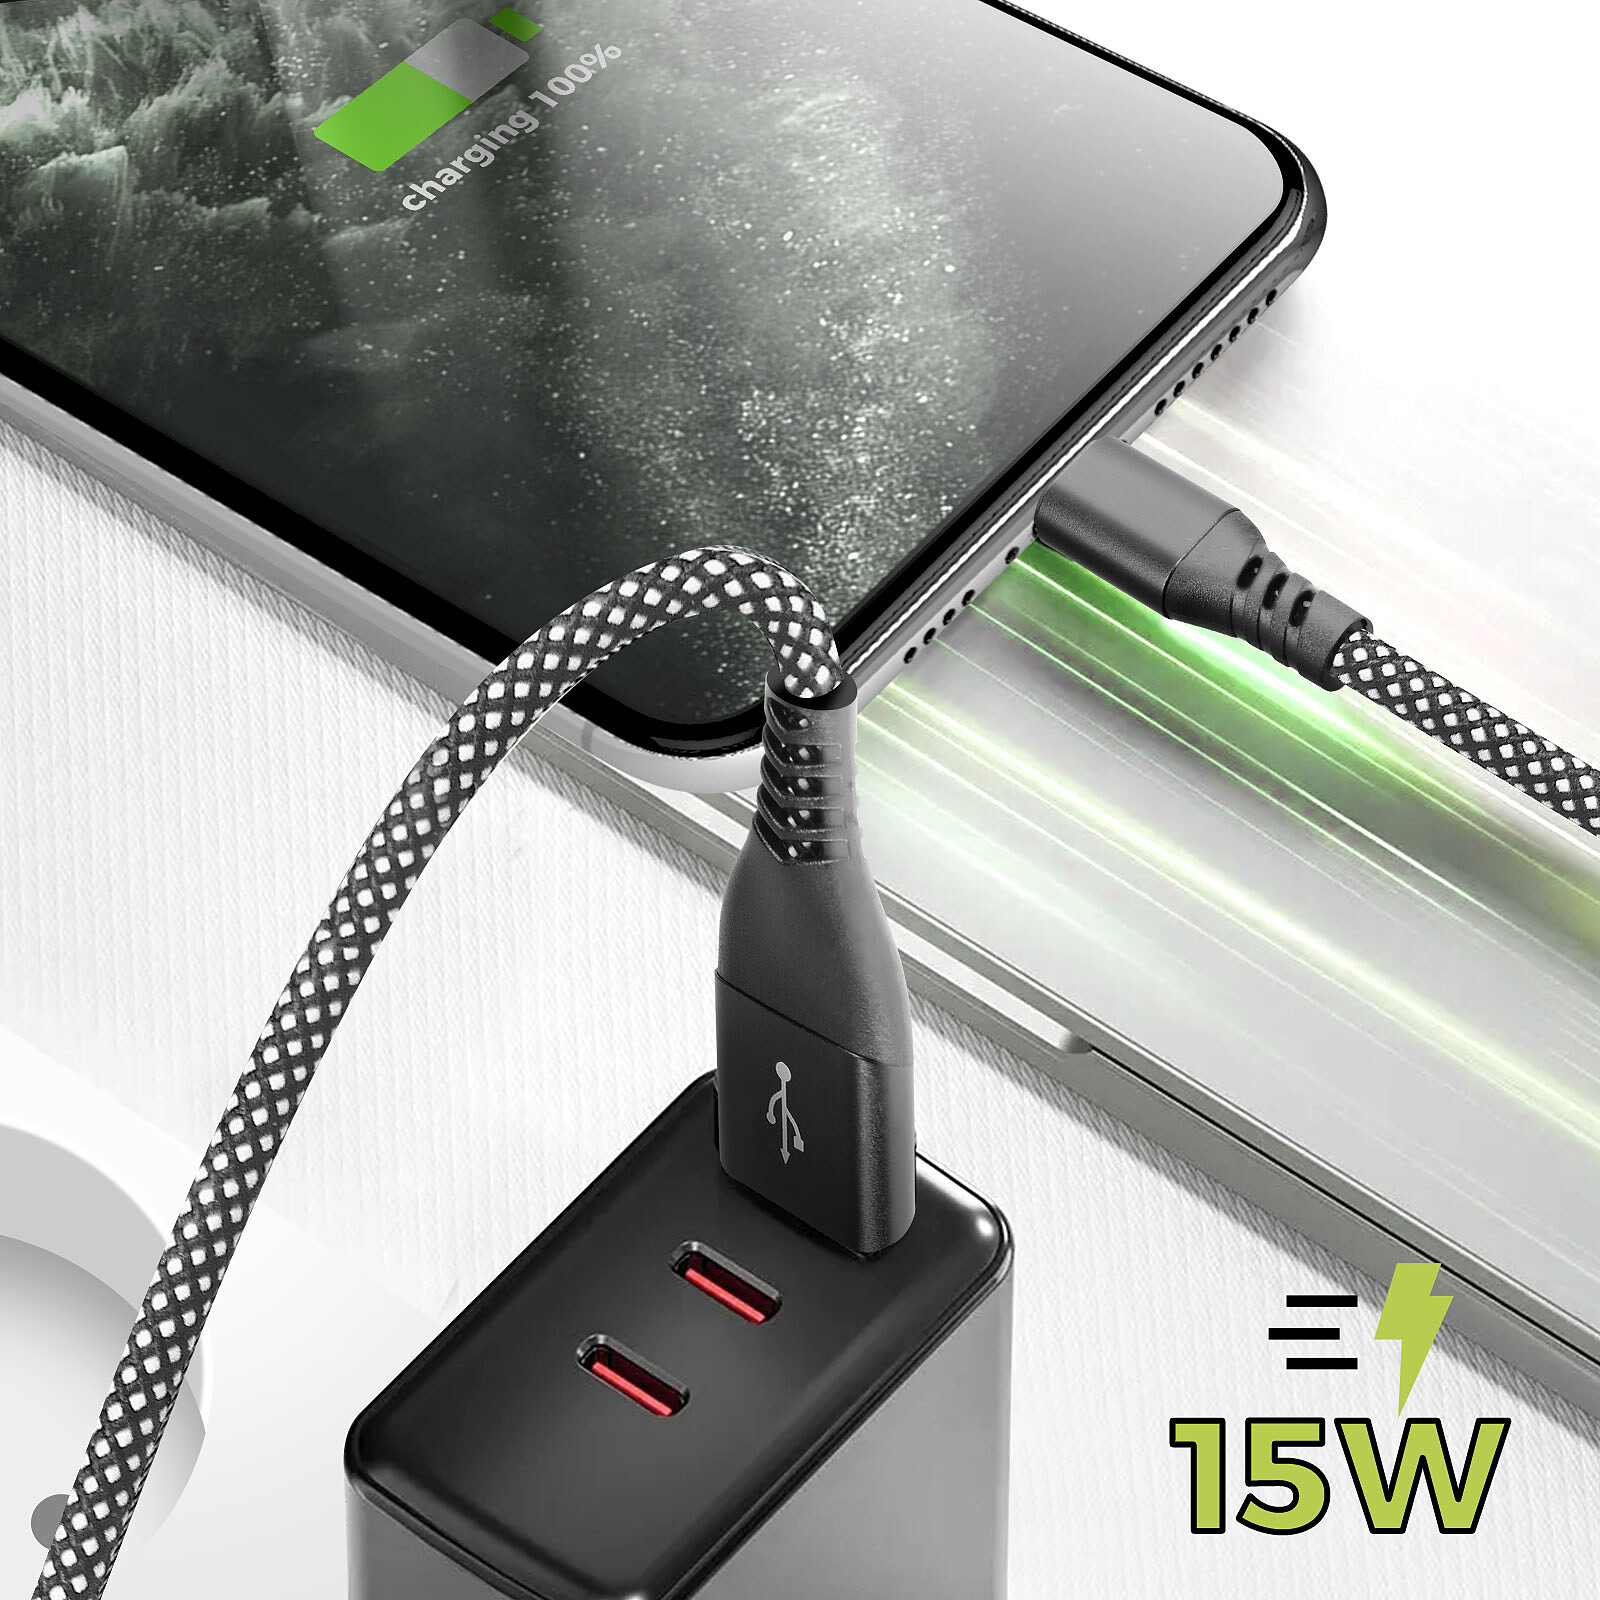 Moxie Câble pour iPhone en nylon tressé noir 2m, USB vers Lightning, -  Accessoires divers smartphone - LDLC